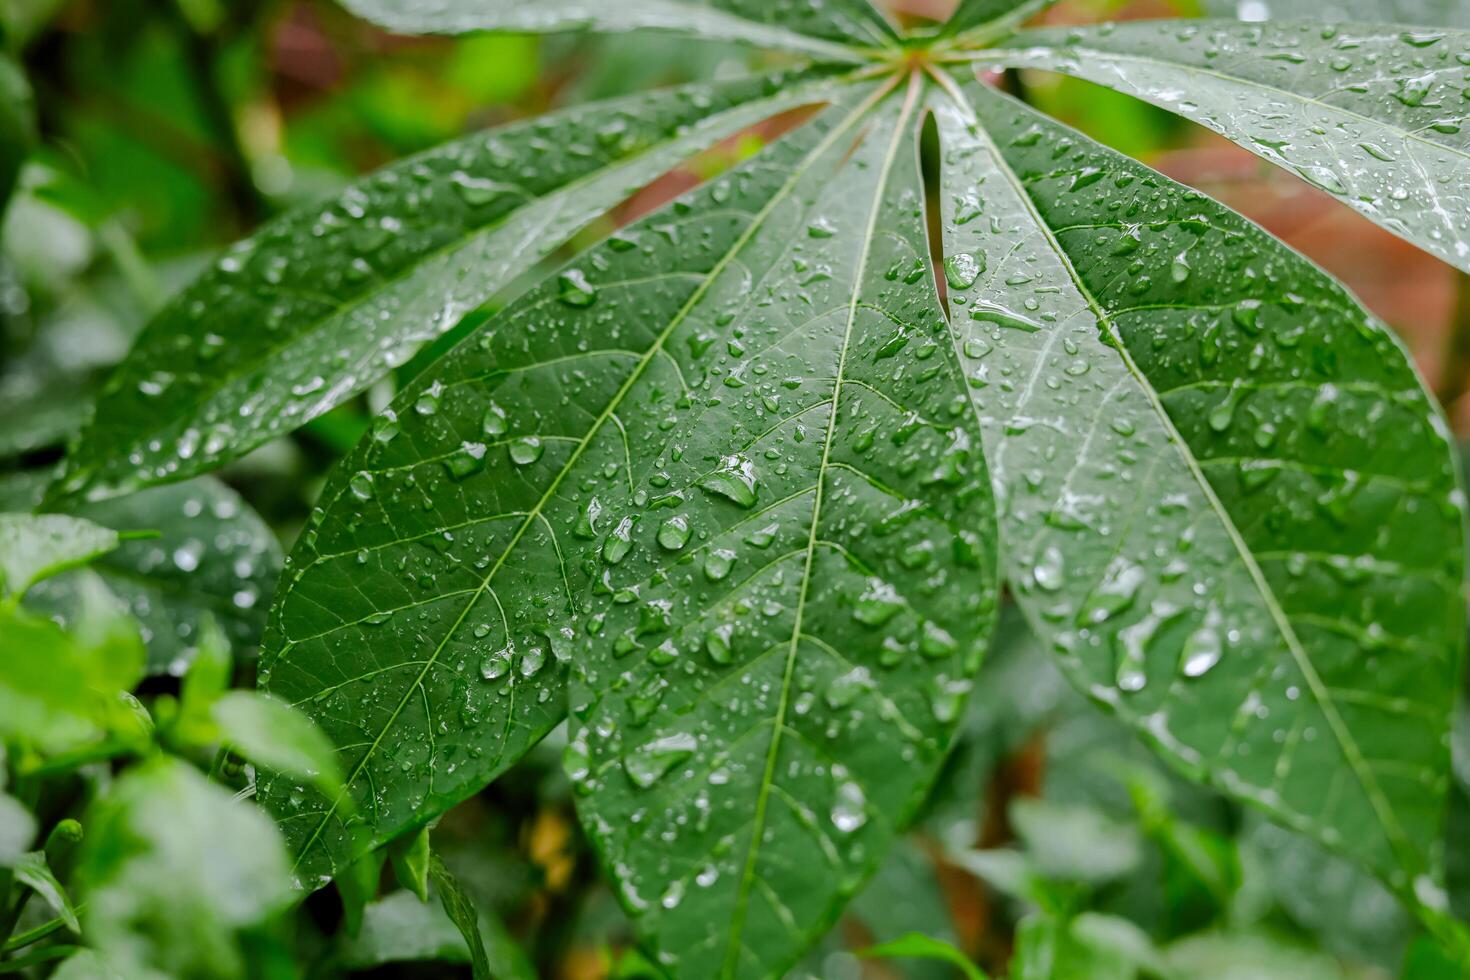 chuva cai em verde folhas foto